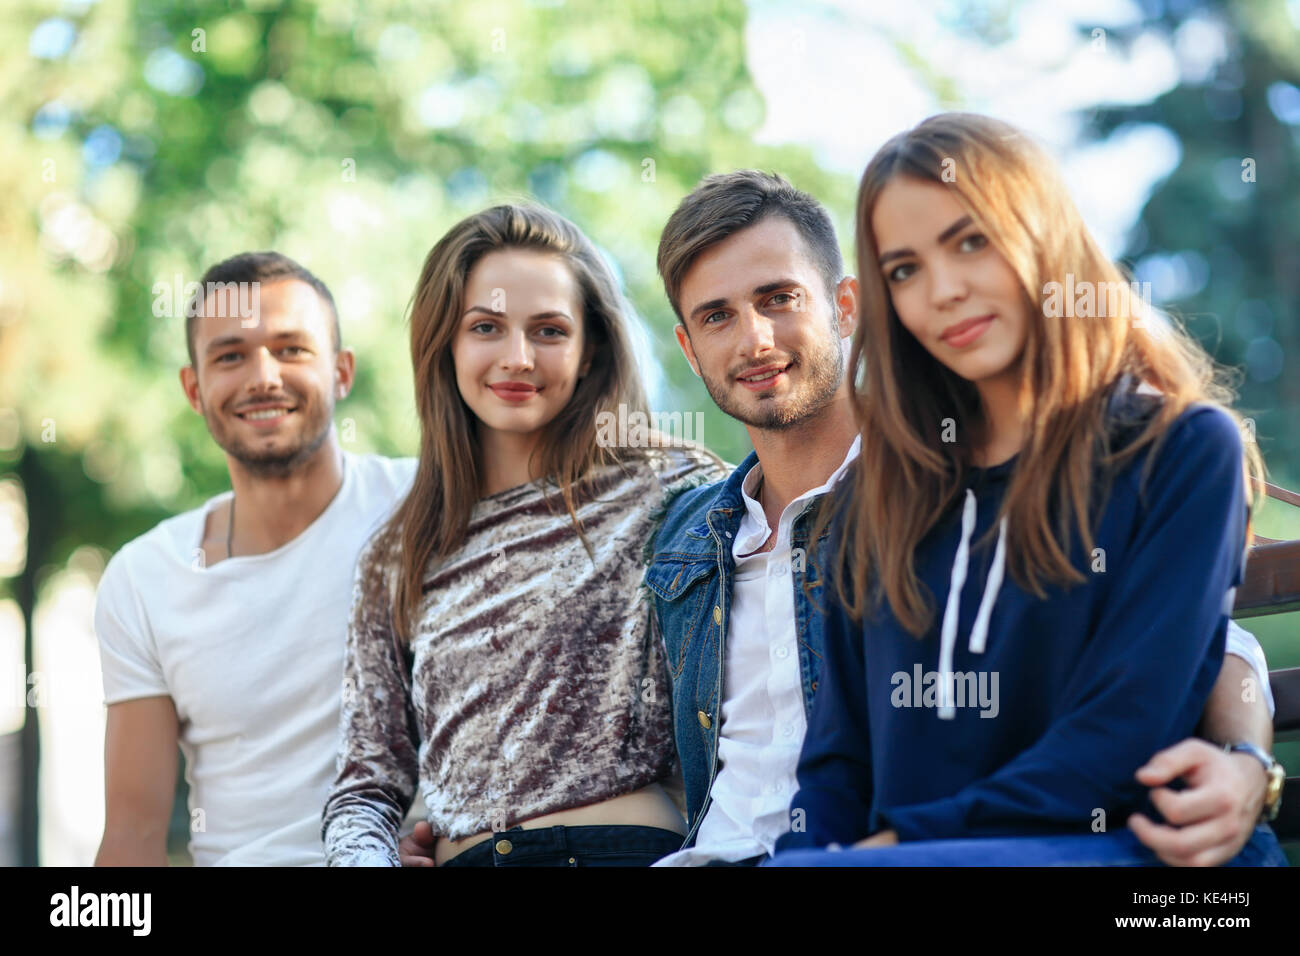 Quatre femmes et hommes assis sur un banc à l'embrasser. heureux jeune élégant friends posing on bench outdoors, smiling at camera et en bonne santé. Banque D'Images